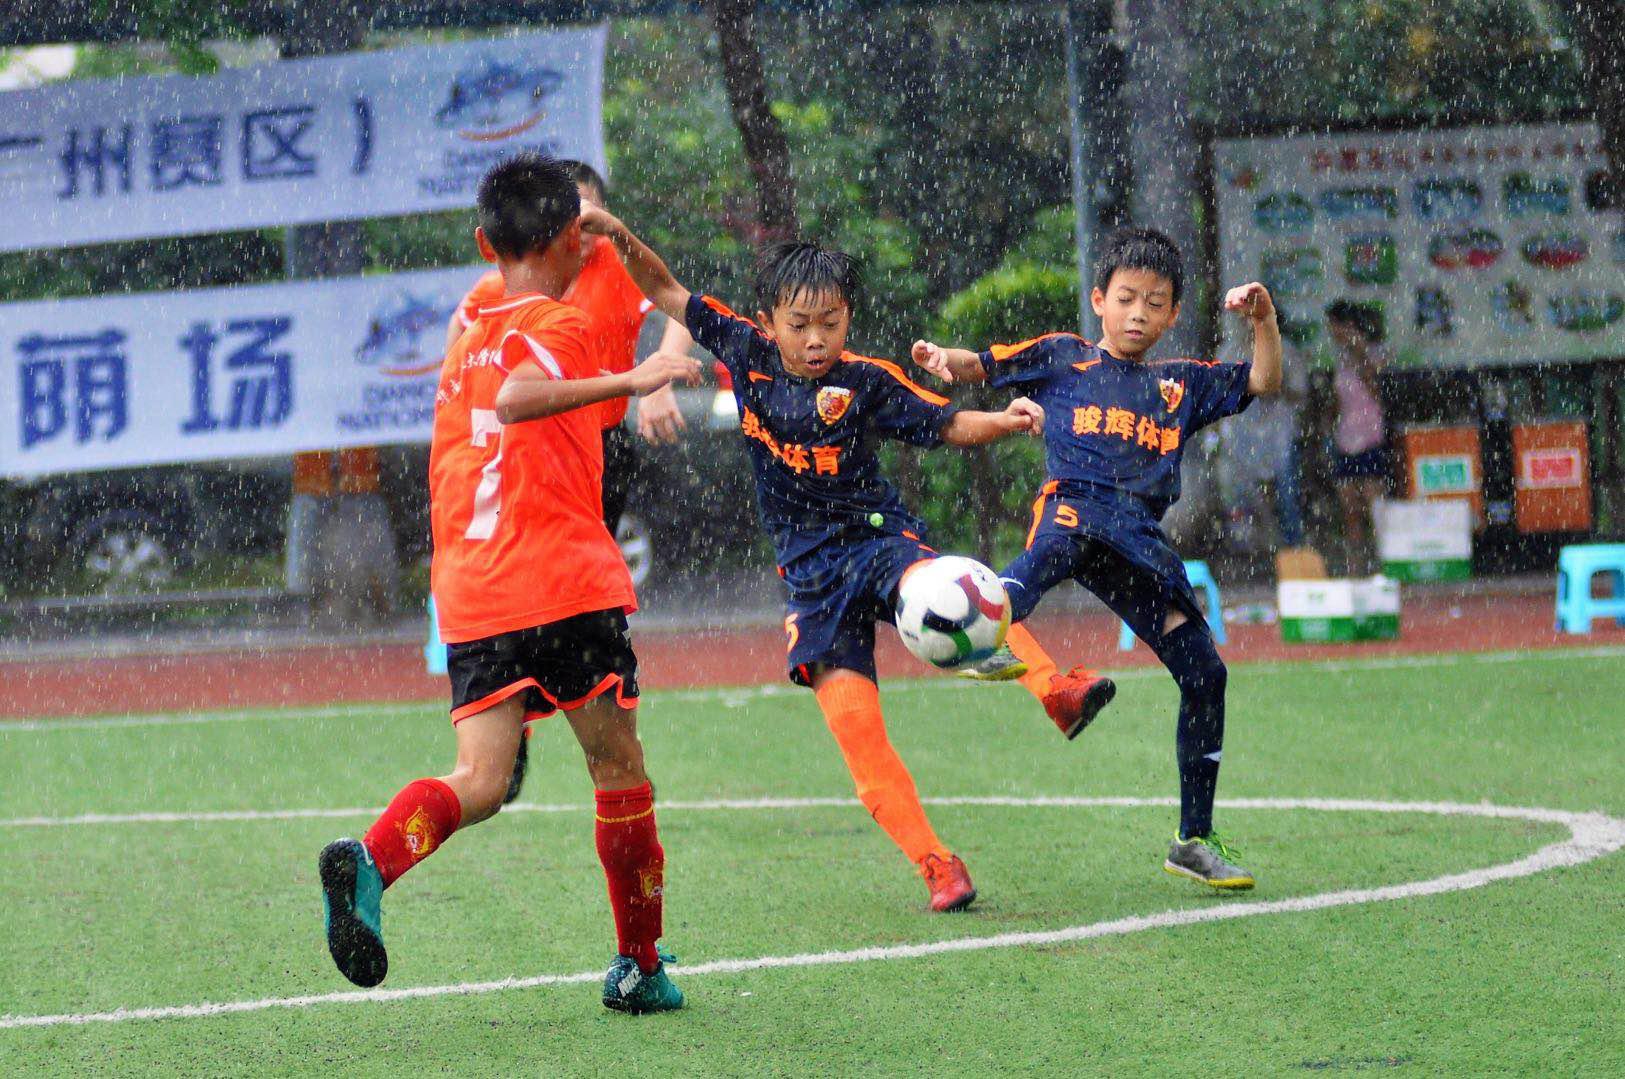 达能助力中国足球少年走向世界足球大舞台